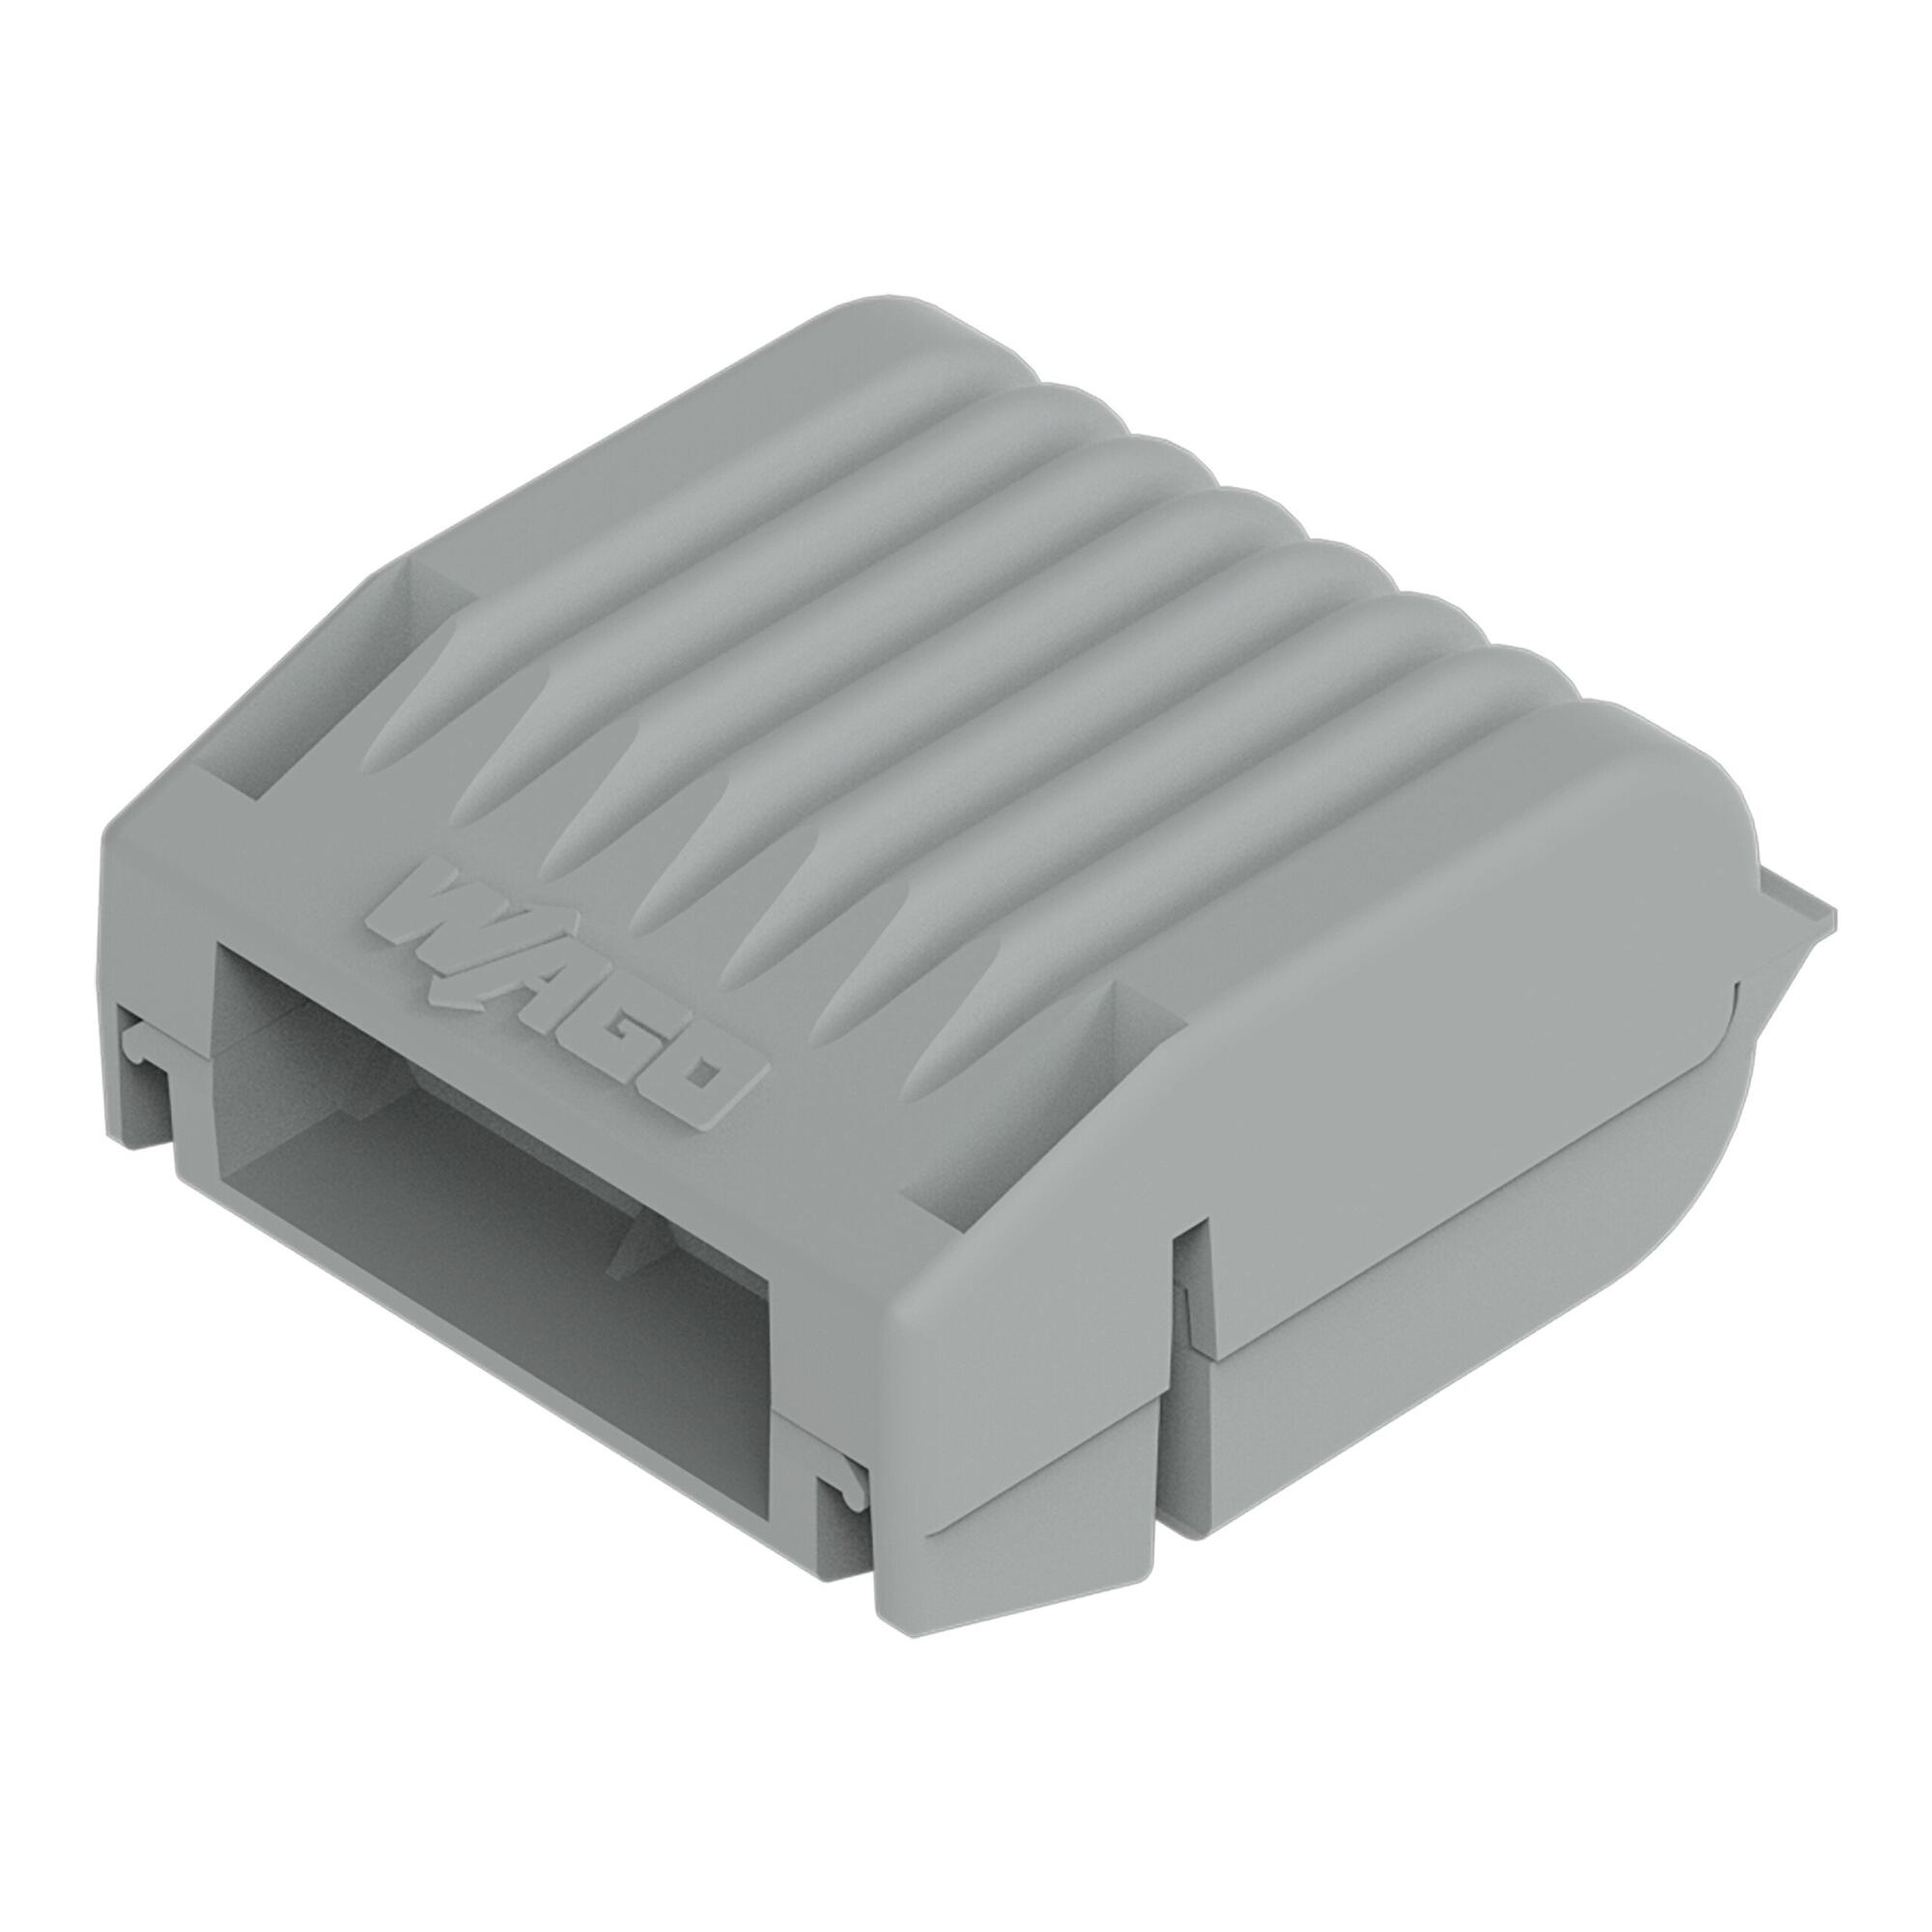 胶盒; 分支; 适于电缆; 带有凝胶; 221, 2x73 系列; 最大4 mm²连接器; 不带导线连接器; Size 1; 灰色